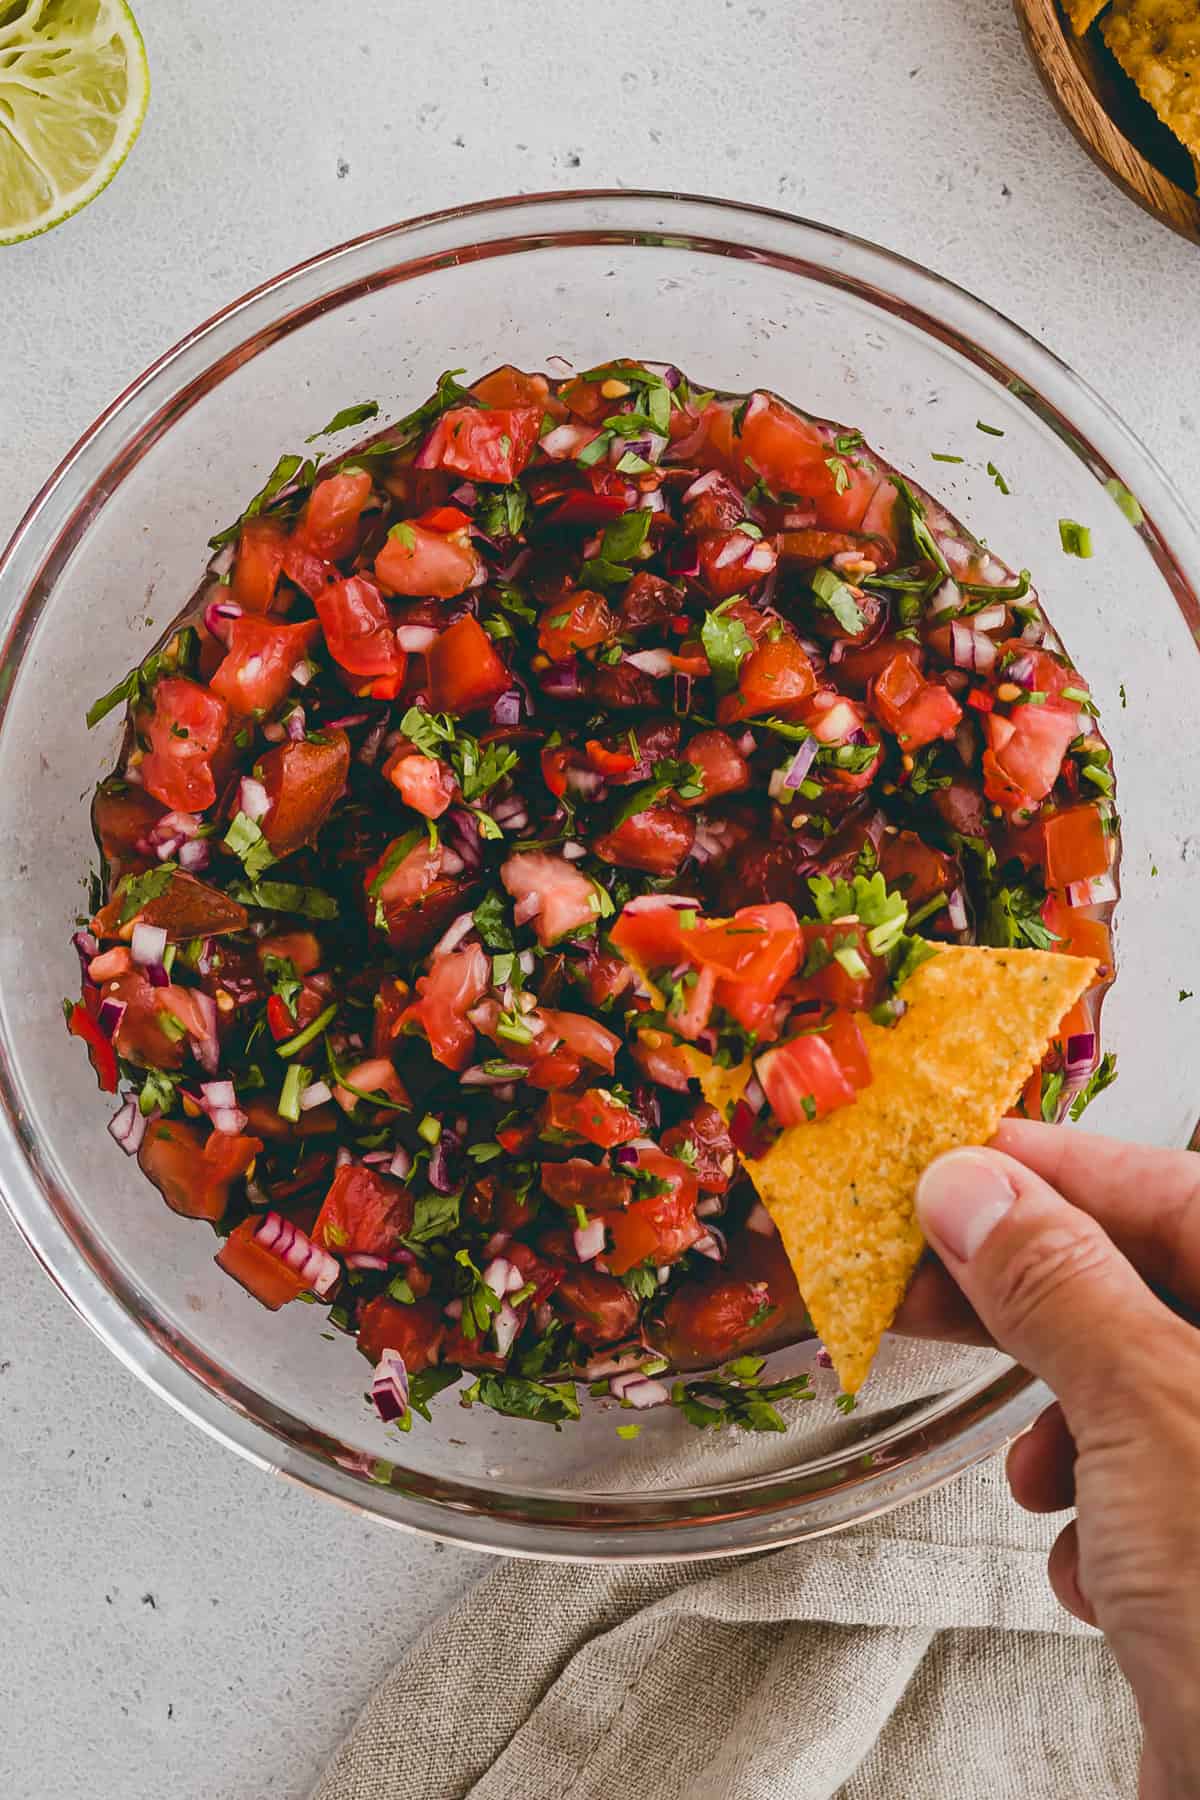 eine hand dipped ein nacho in mexikanische salsa